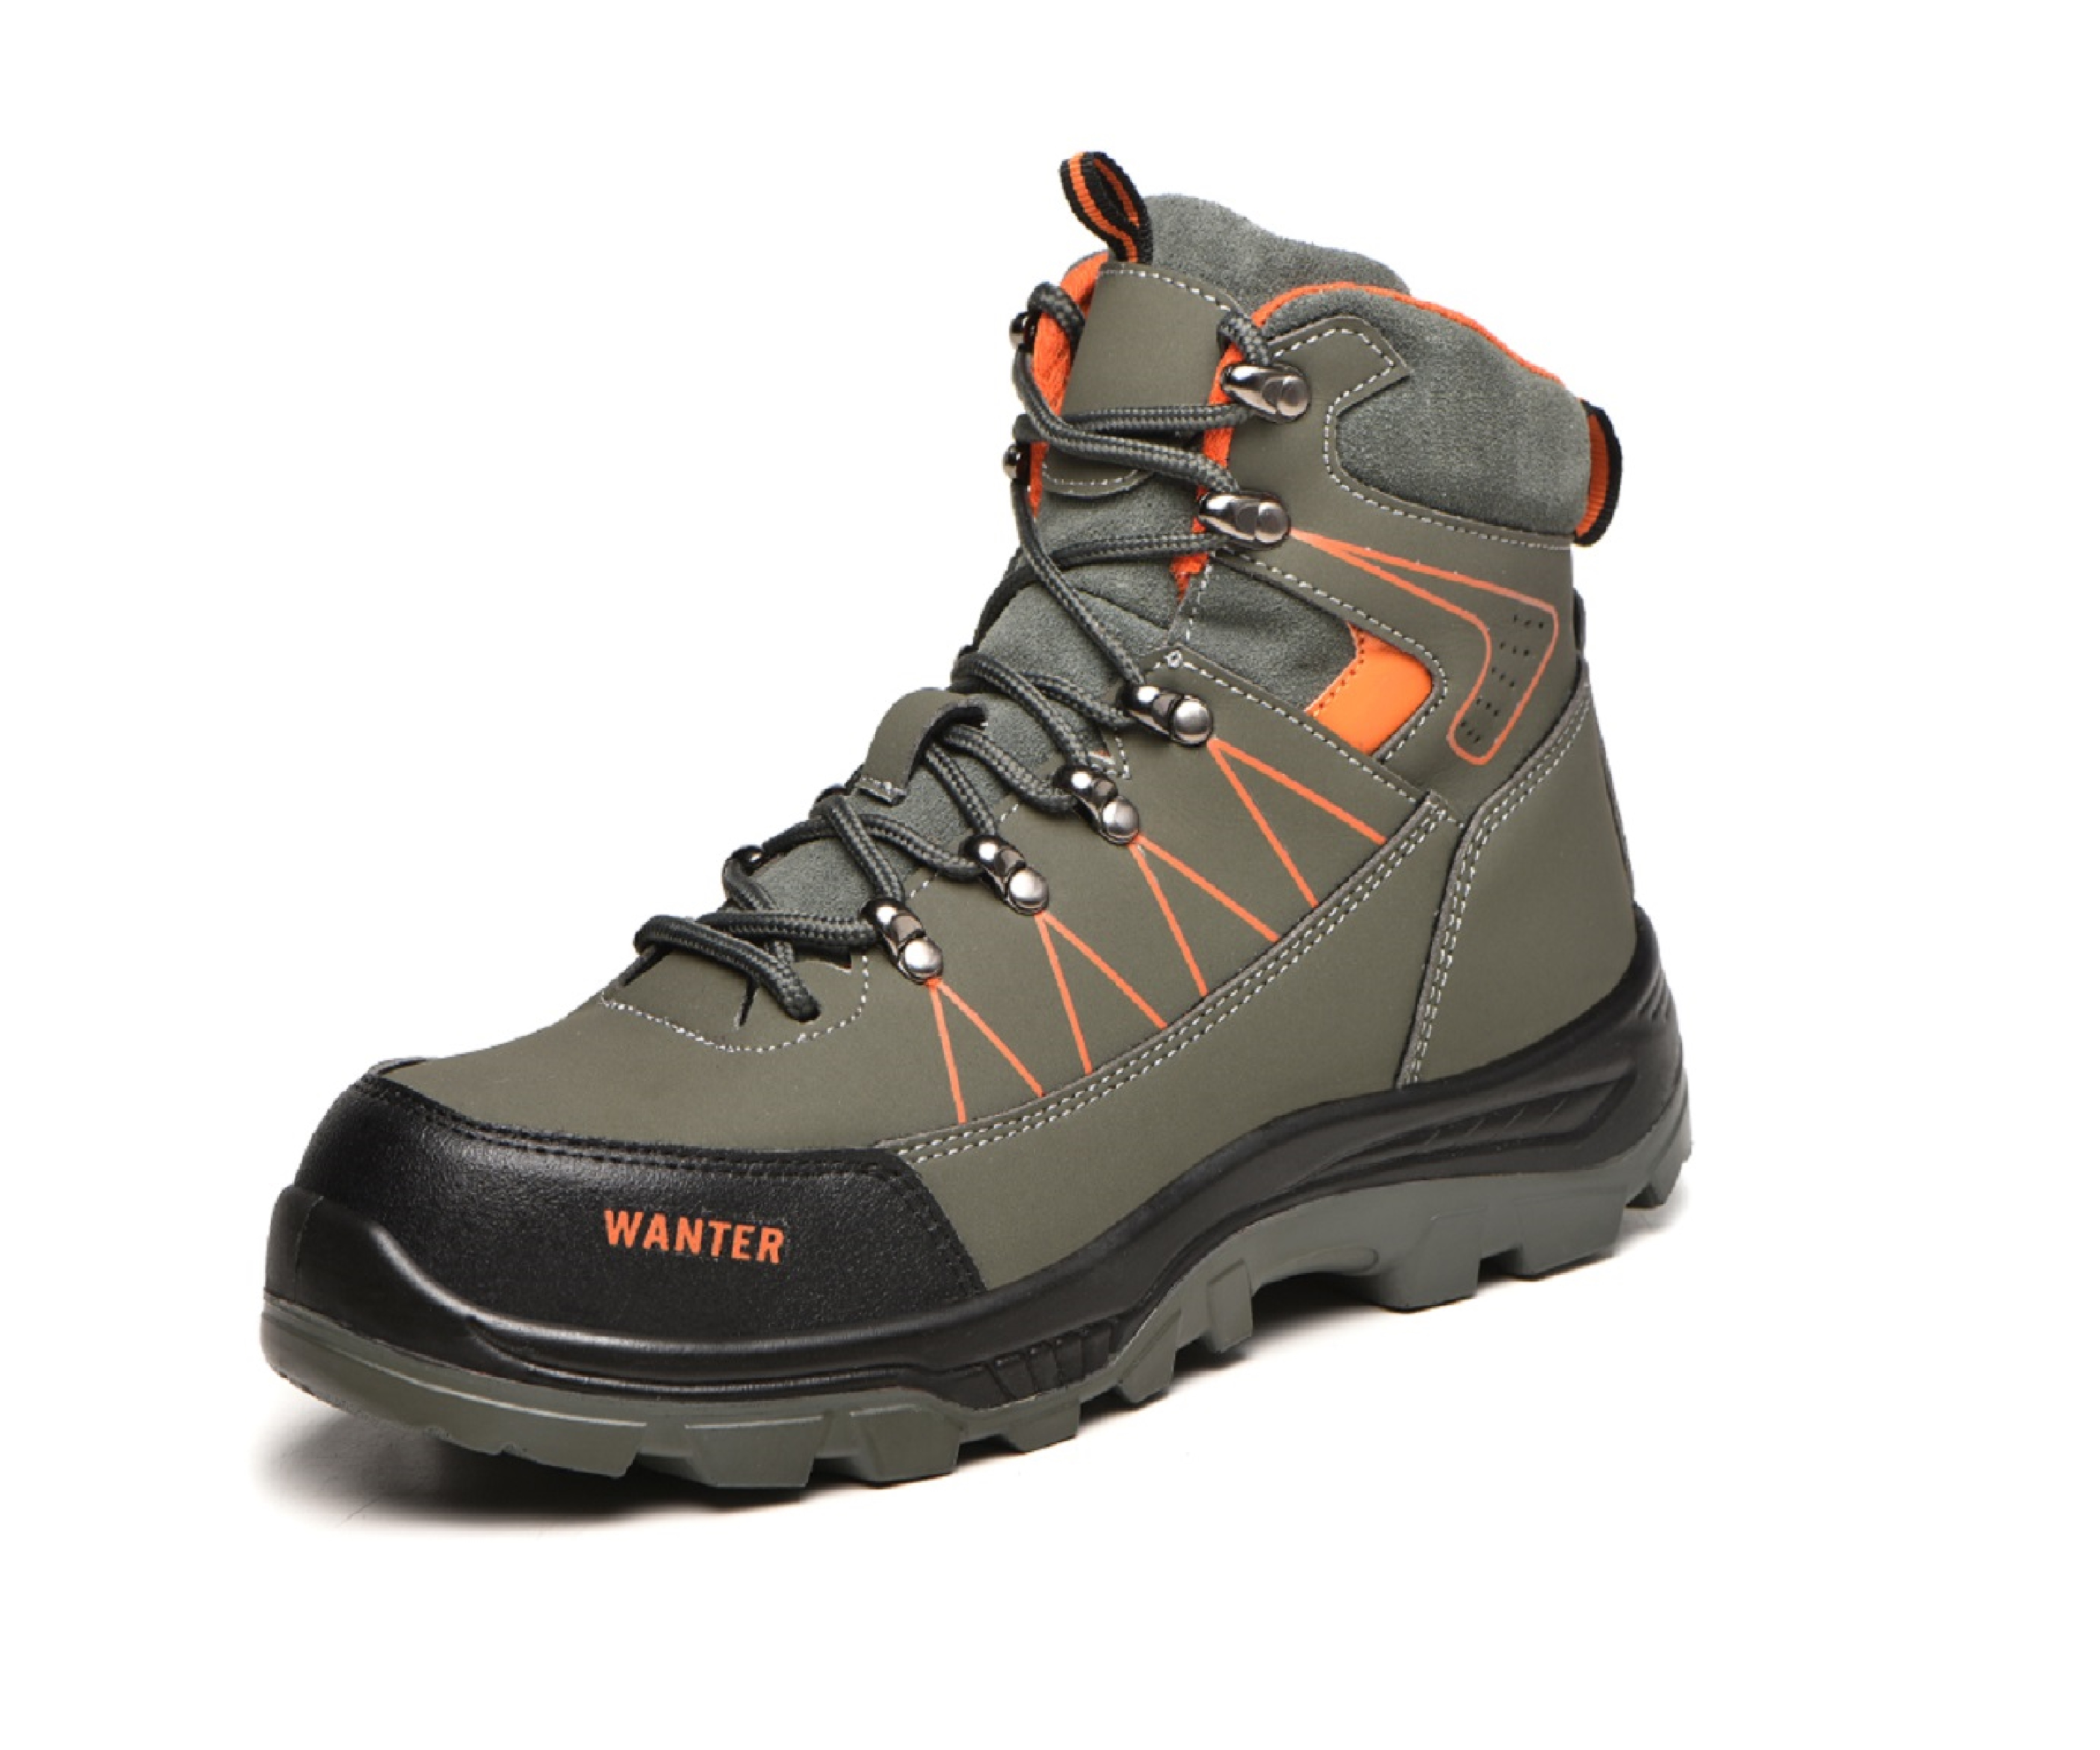 Men's Steel Toe Safety Boots - Model 608 SafeAlex.com